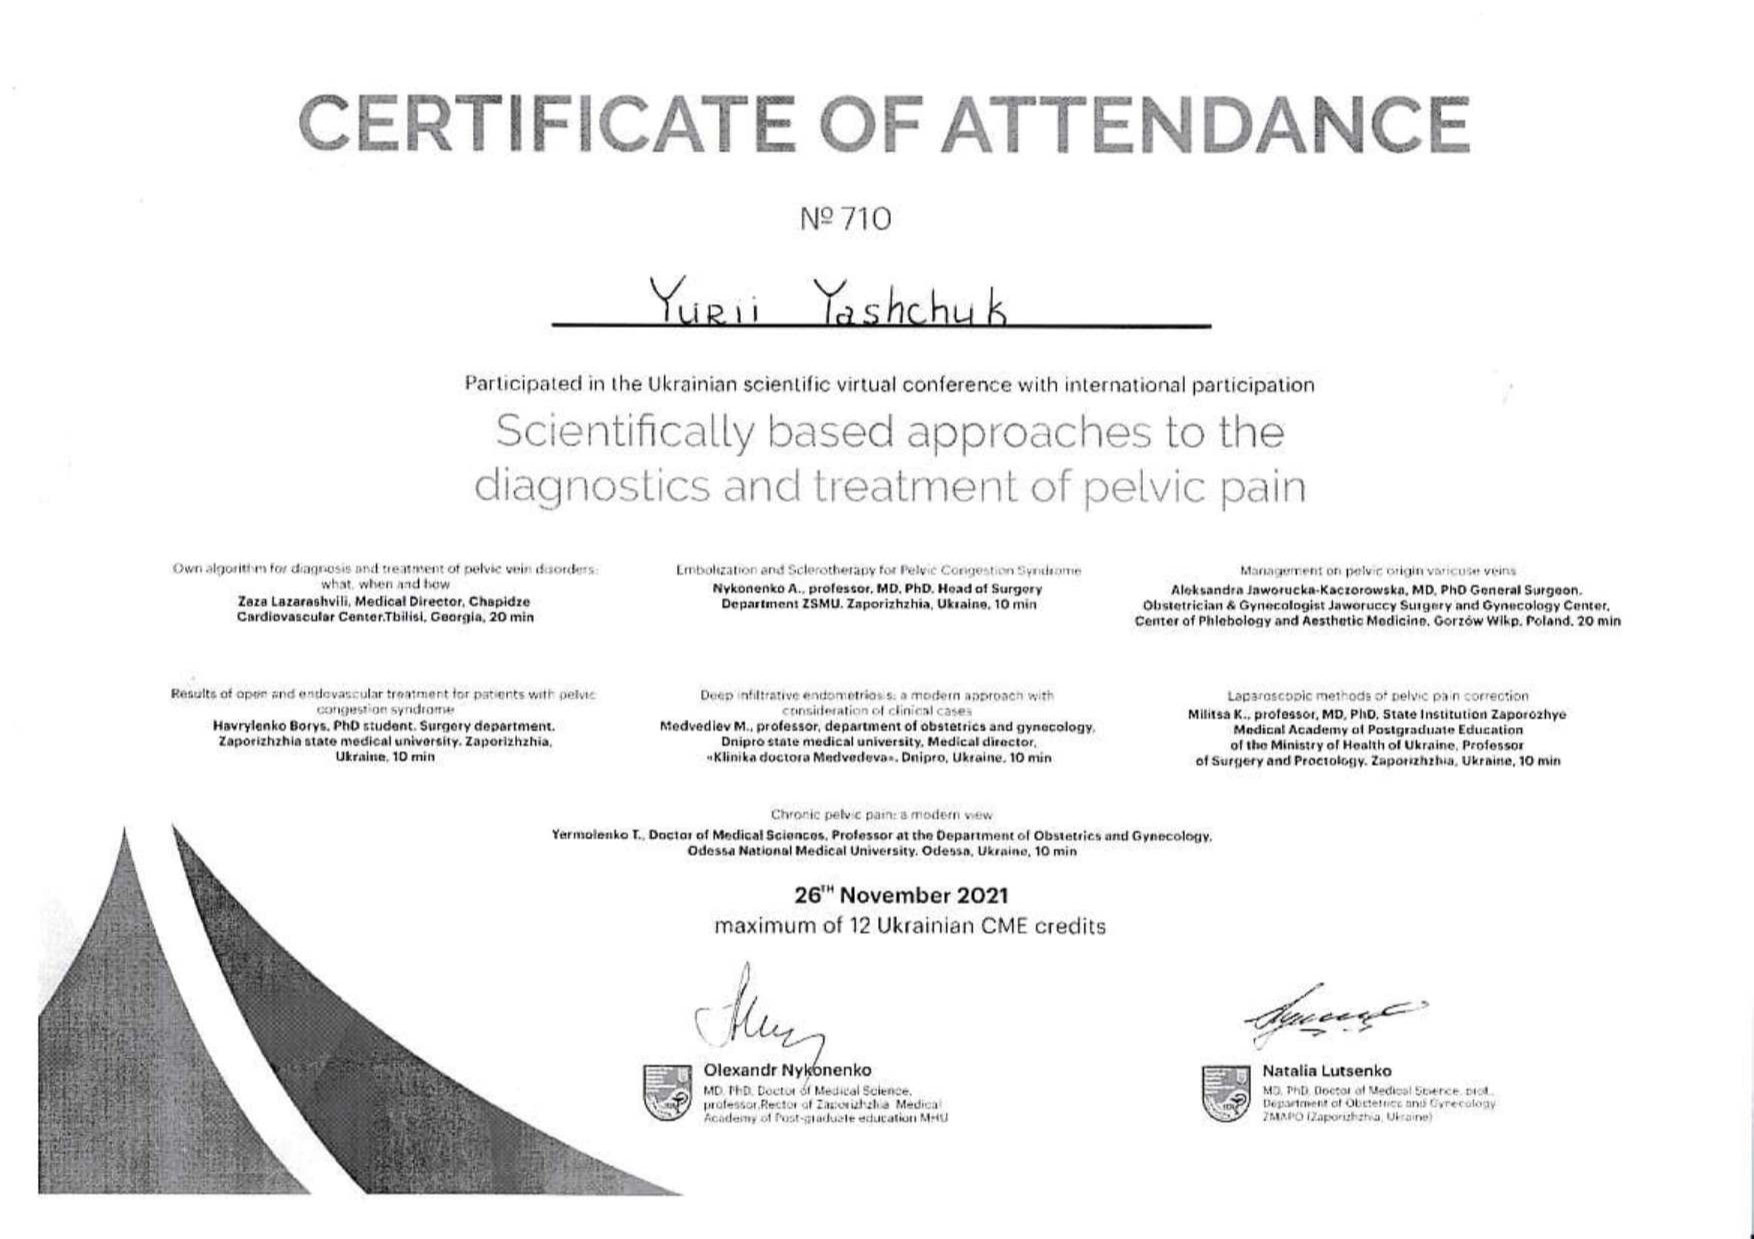 Сертификат об участии во Всеукраинской научной виртуальной конференции с международным участием